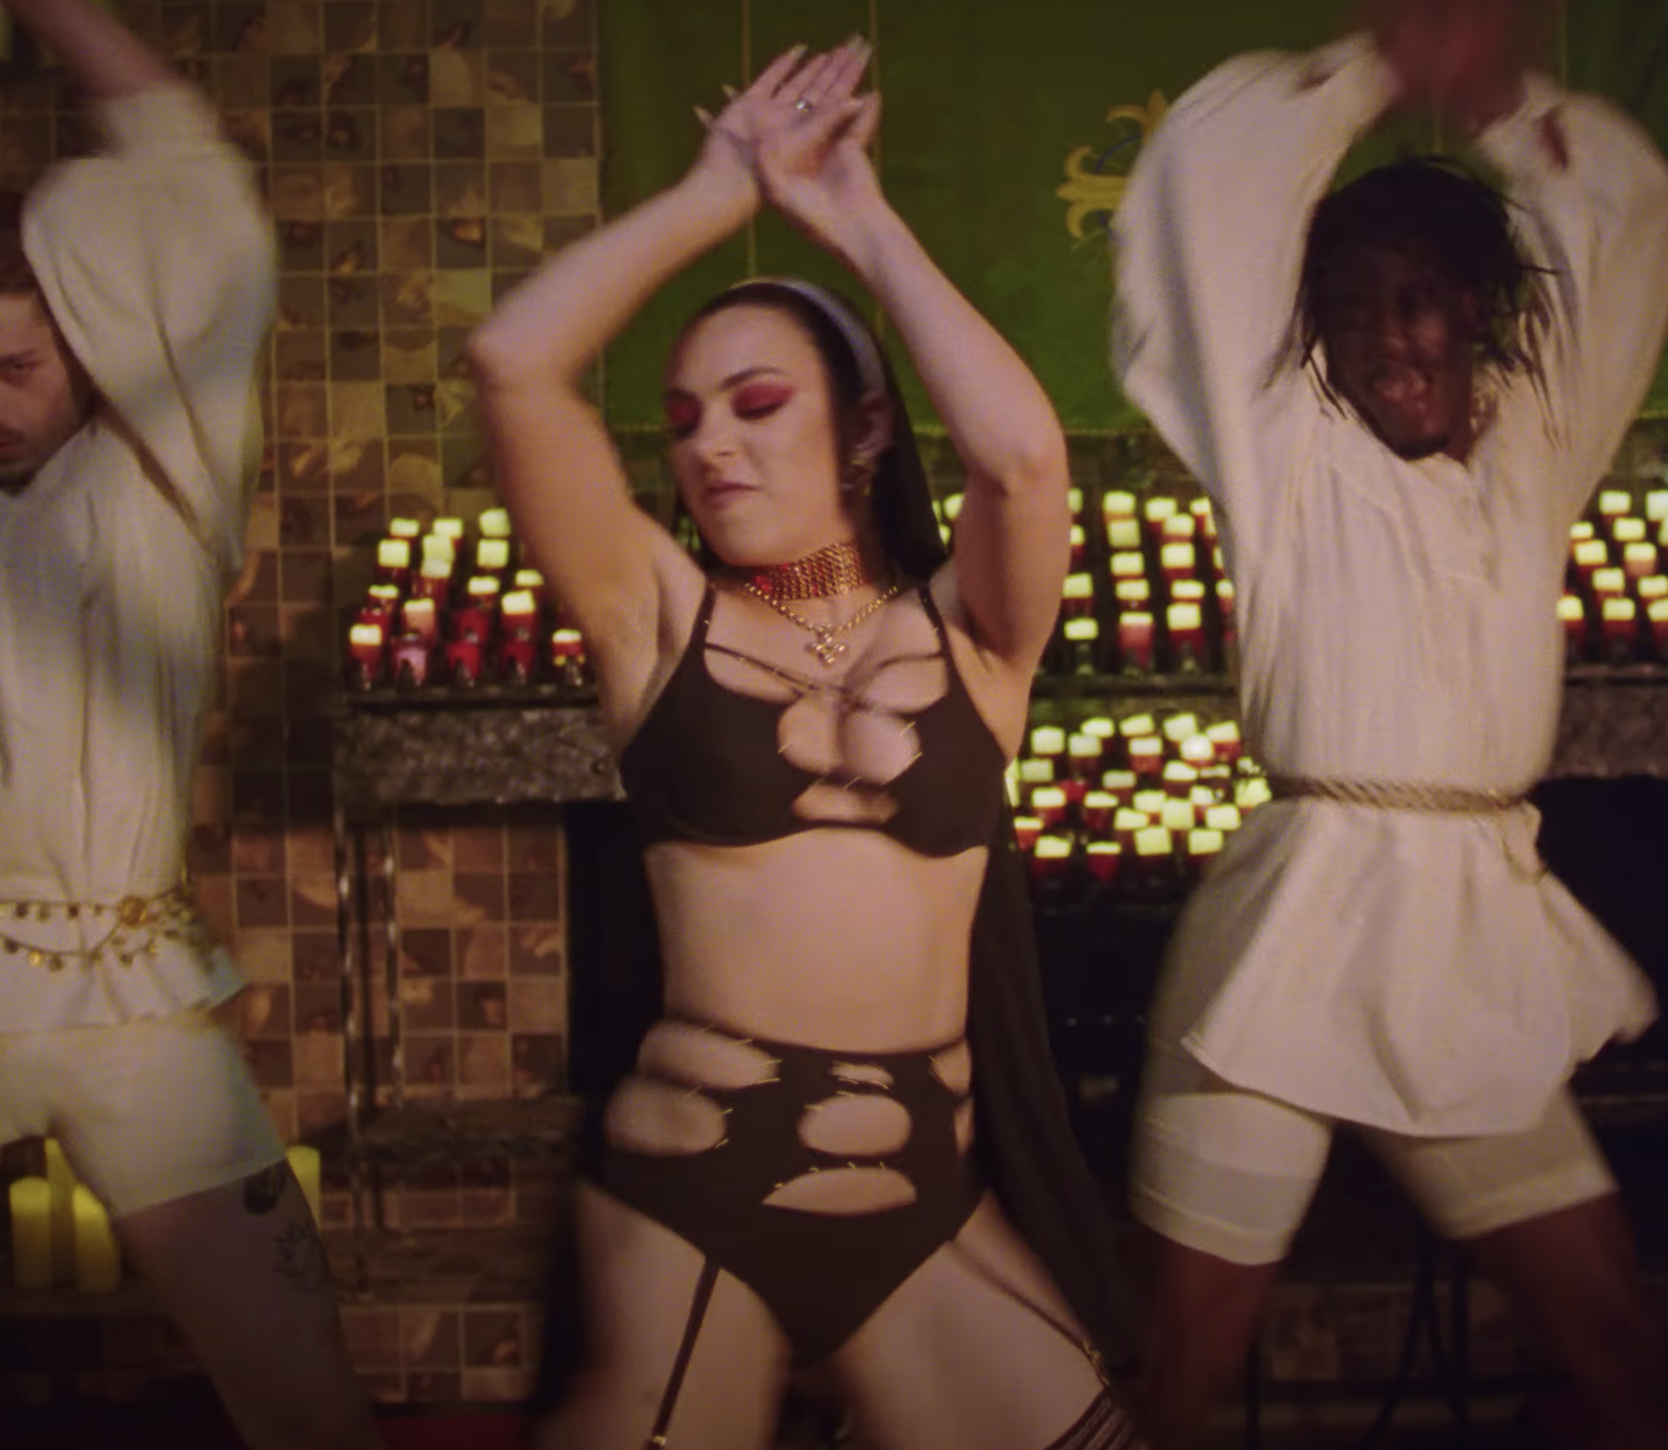 Fotos n°8 : Charli XCX es una monja sexy en un nuevo video musical!